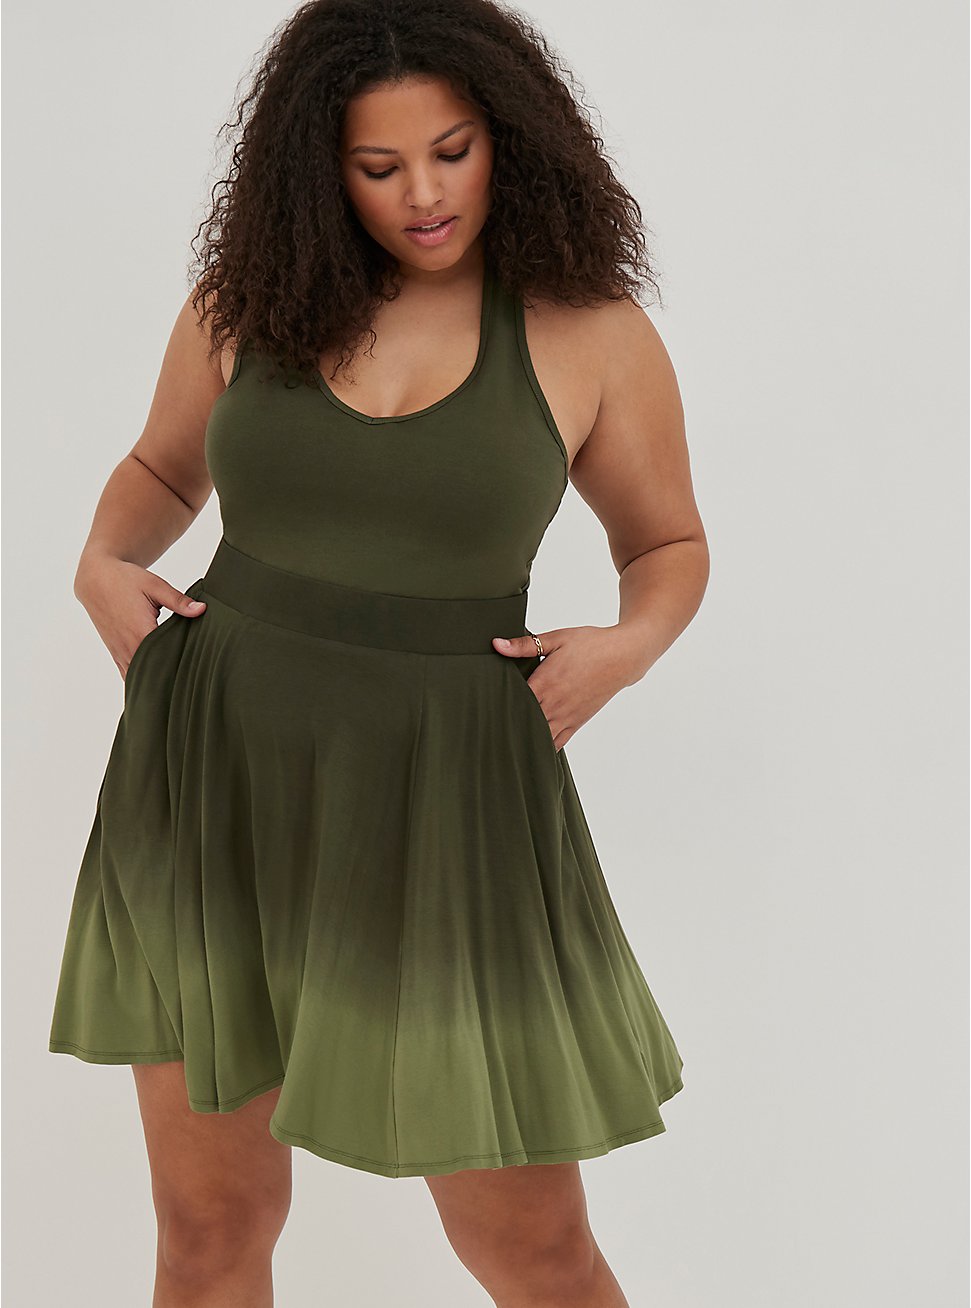 Tiered Circle Skirt - Jersey Dip Dye Green, DIP DYE, hi-res